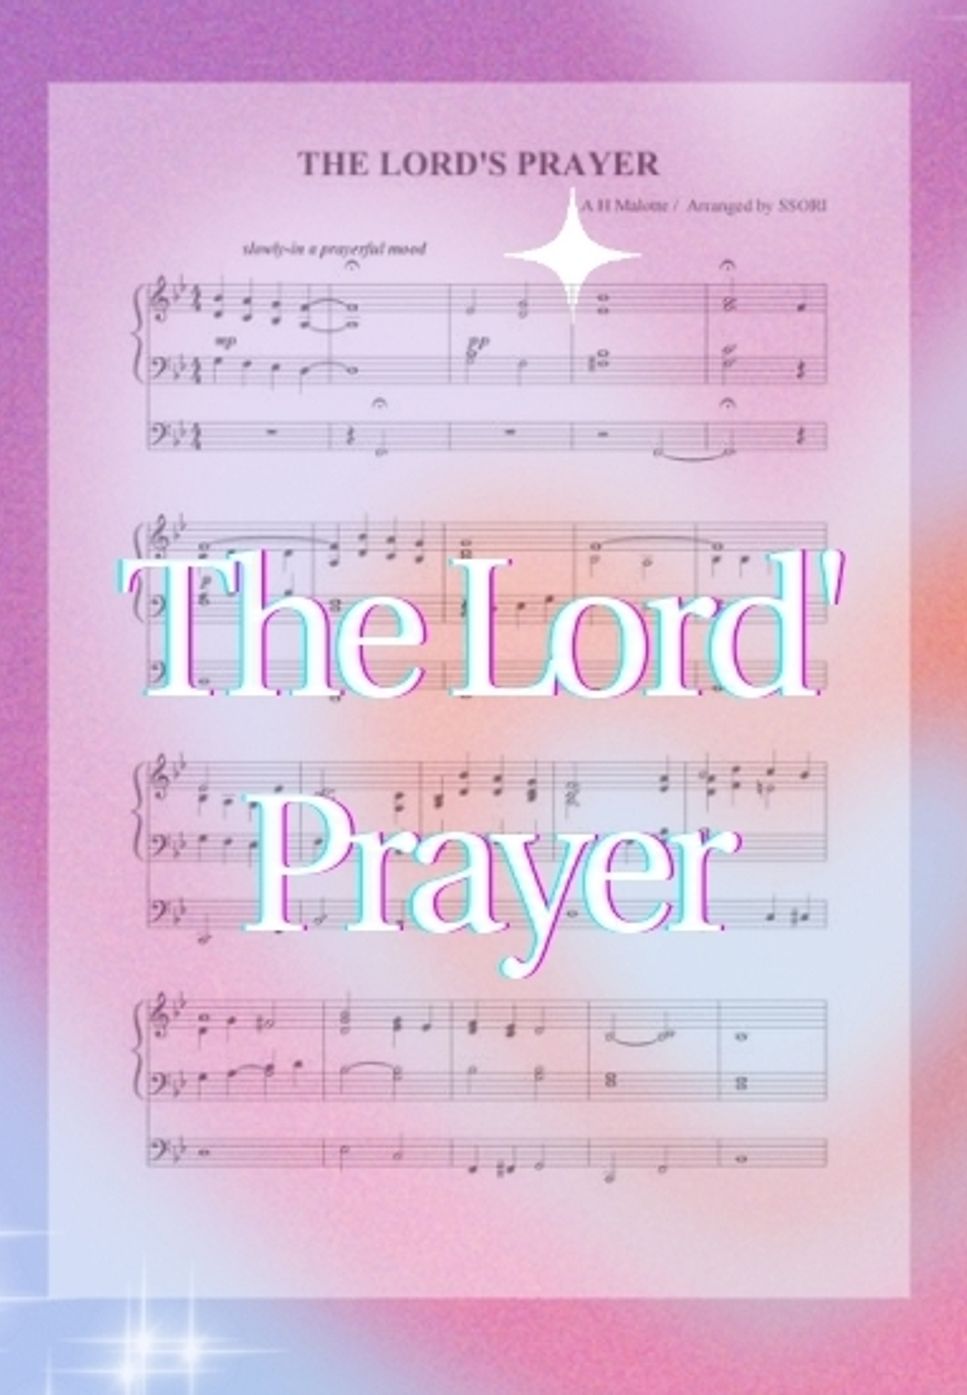 A.H.Malotte - 주기도문송  The Lord's Prayer (organ prelude 오르간연주곡,전주곡) by SSORI